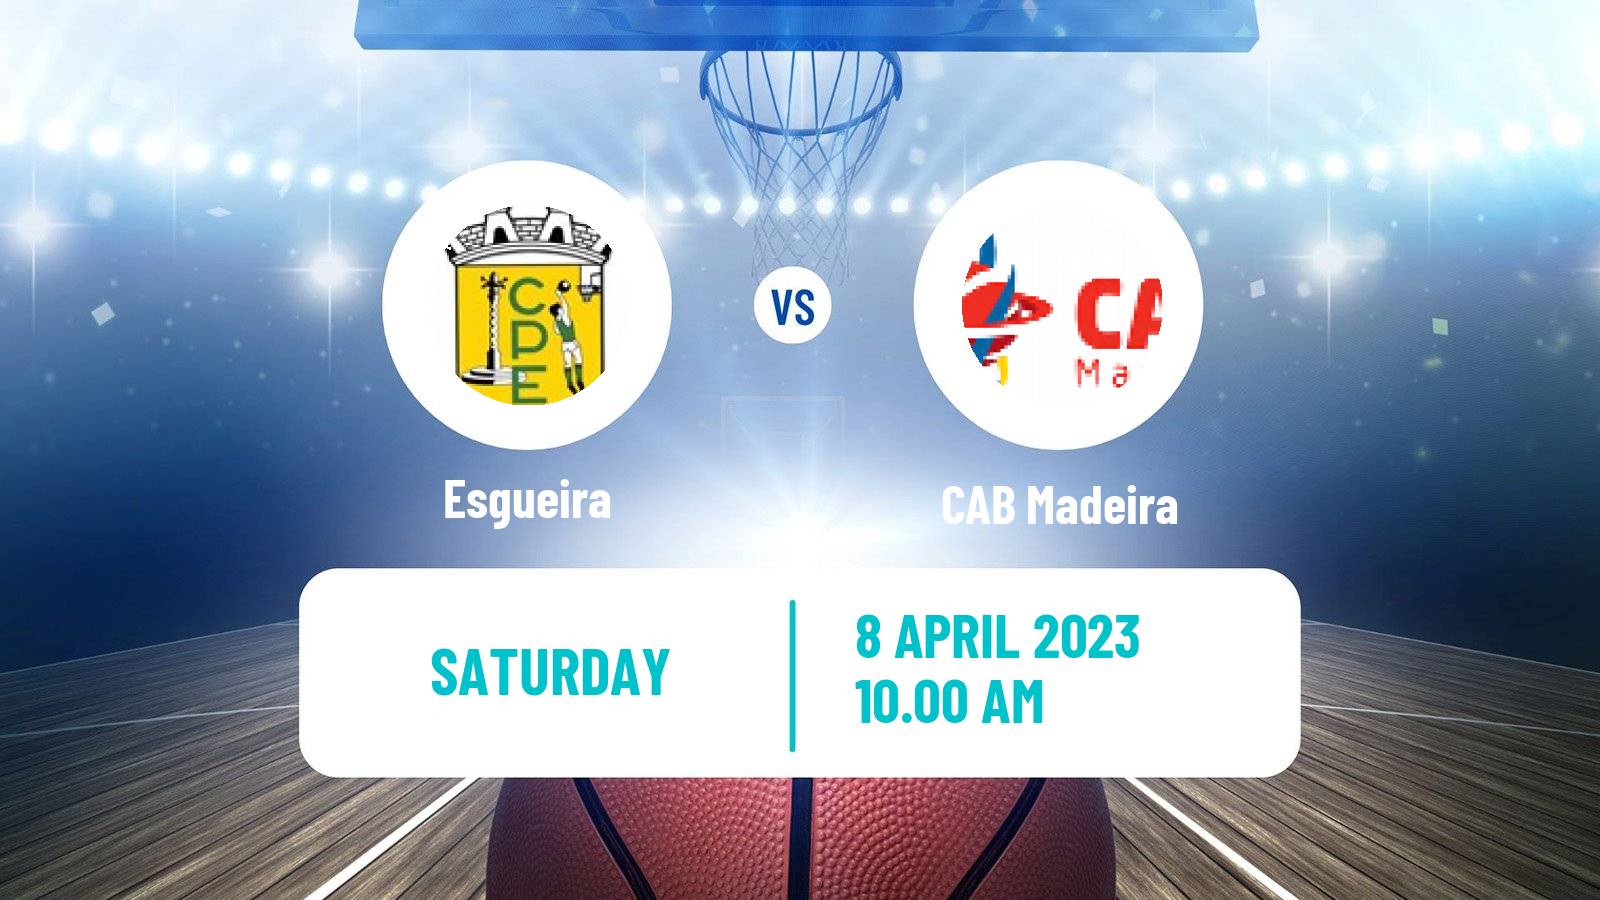 Basketball Portuguese LPB Esgueira - Madeira